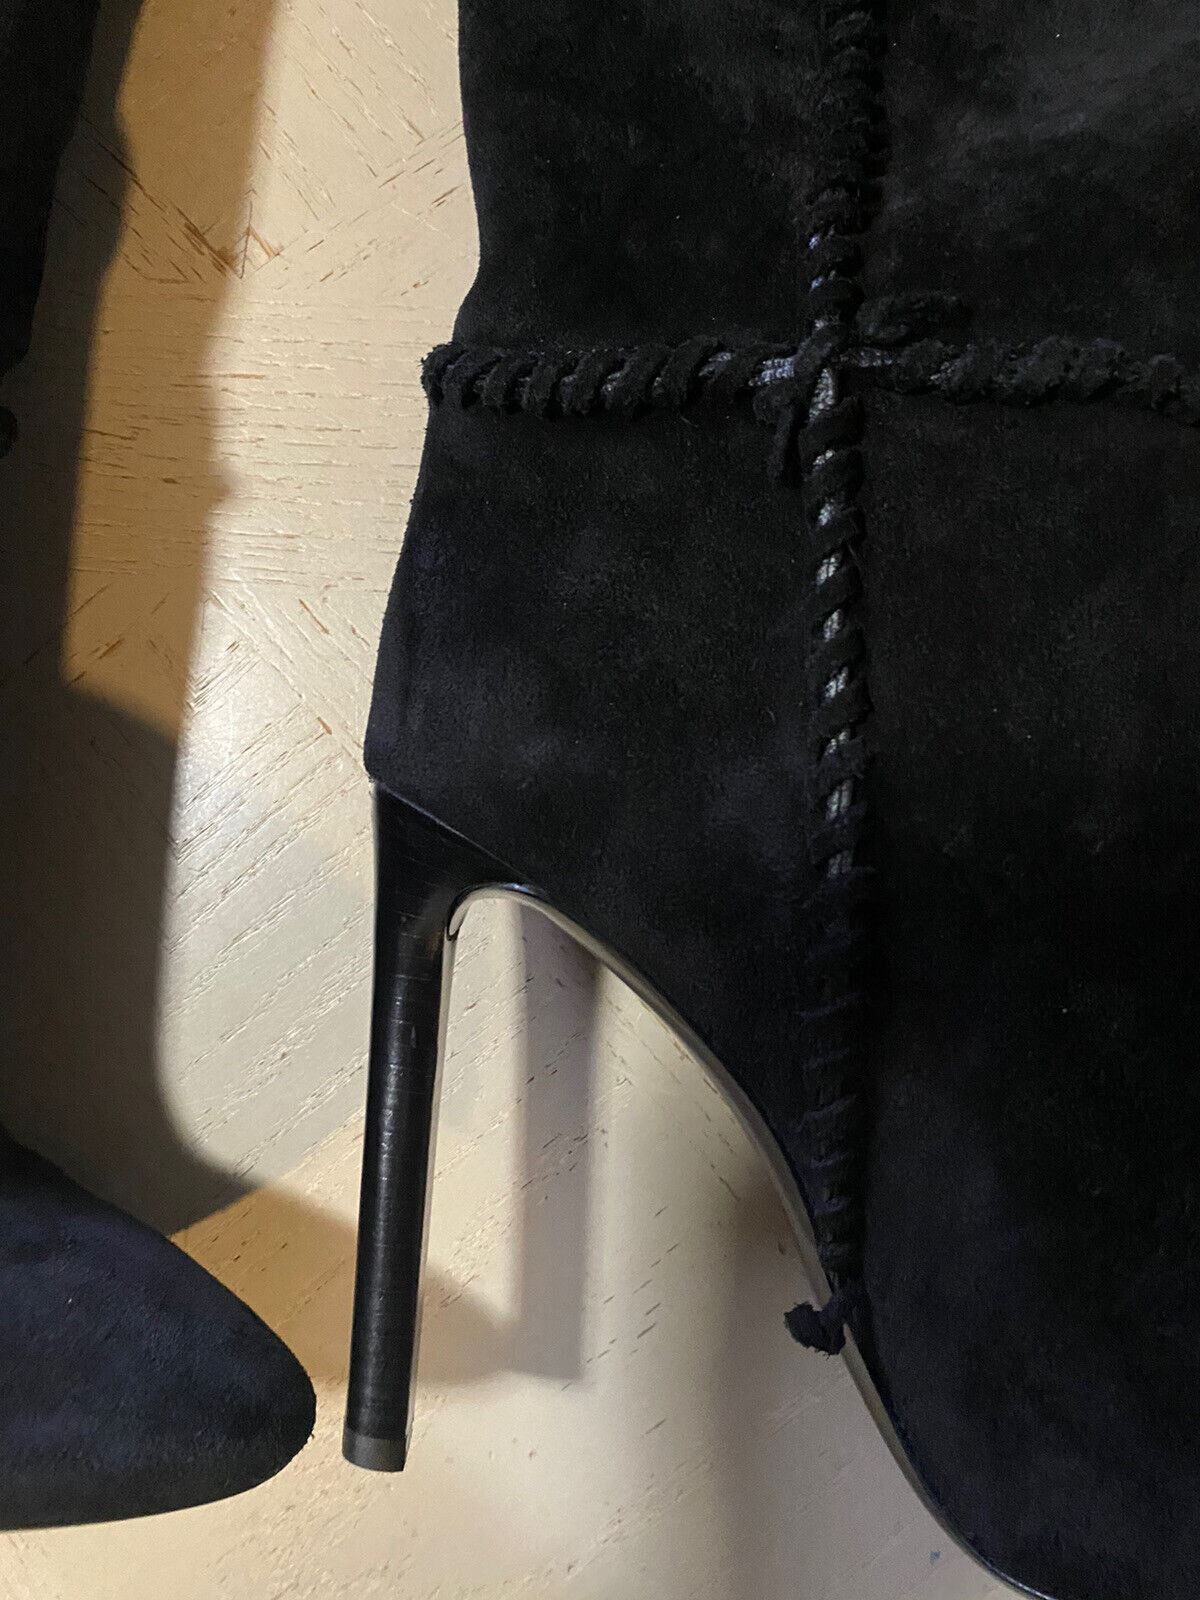 NIB $1695 Saint Laurent Женские замшевые сапоги Туфли черные 552677 10,5 США/40,5 ЕС